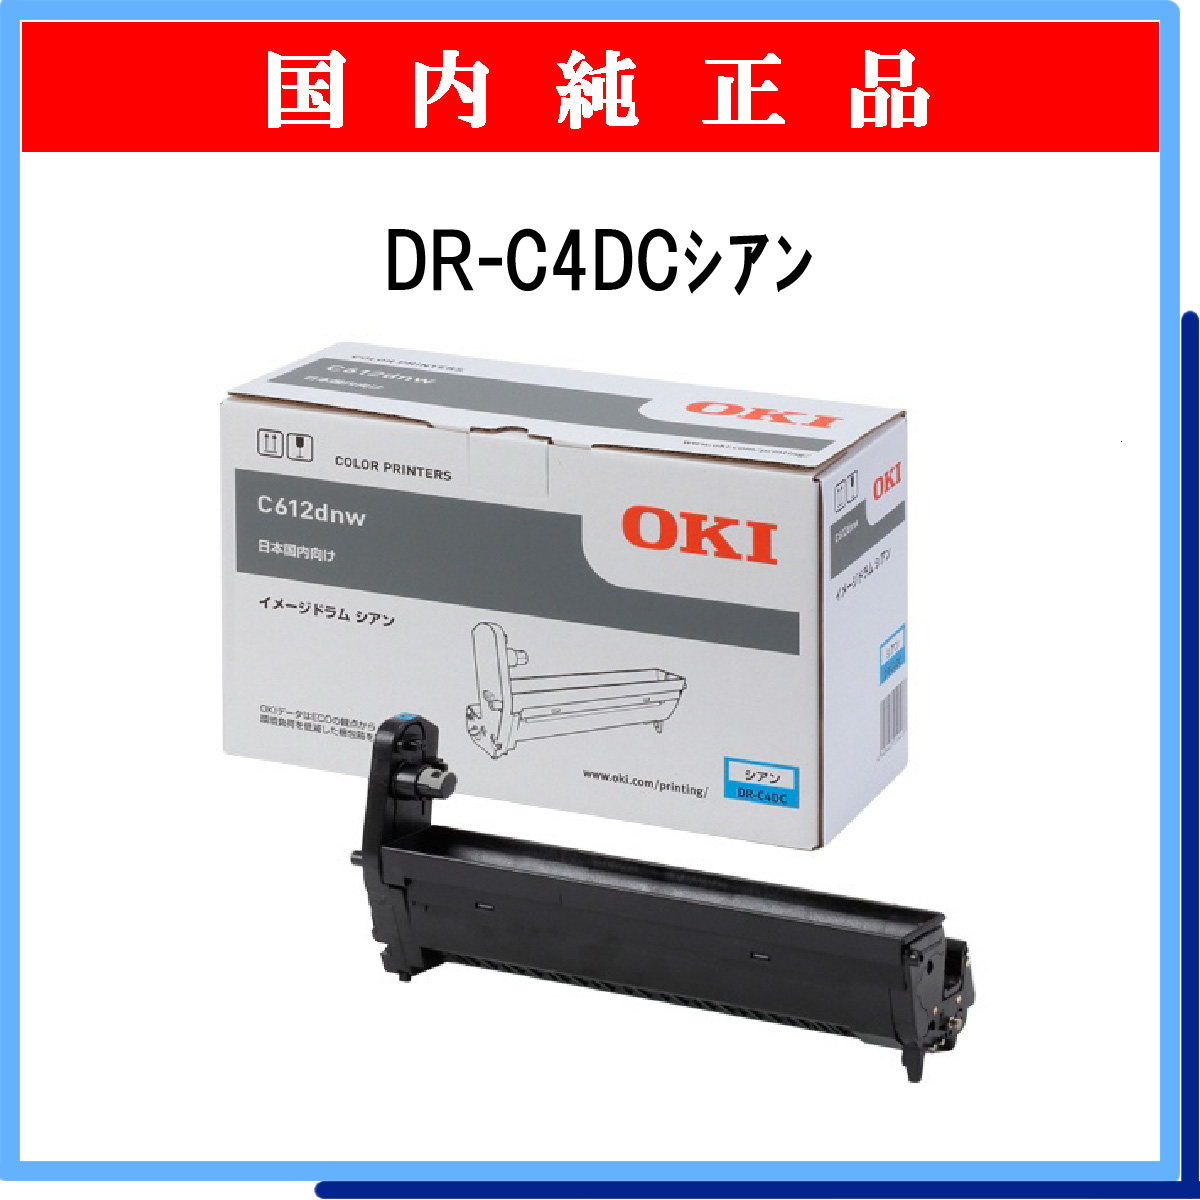 沖データ イメージドラム ブラック (C612dnw) DR-C4DK - 4